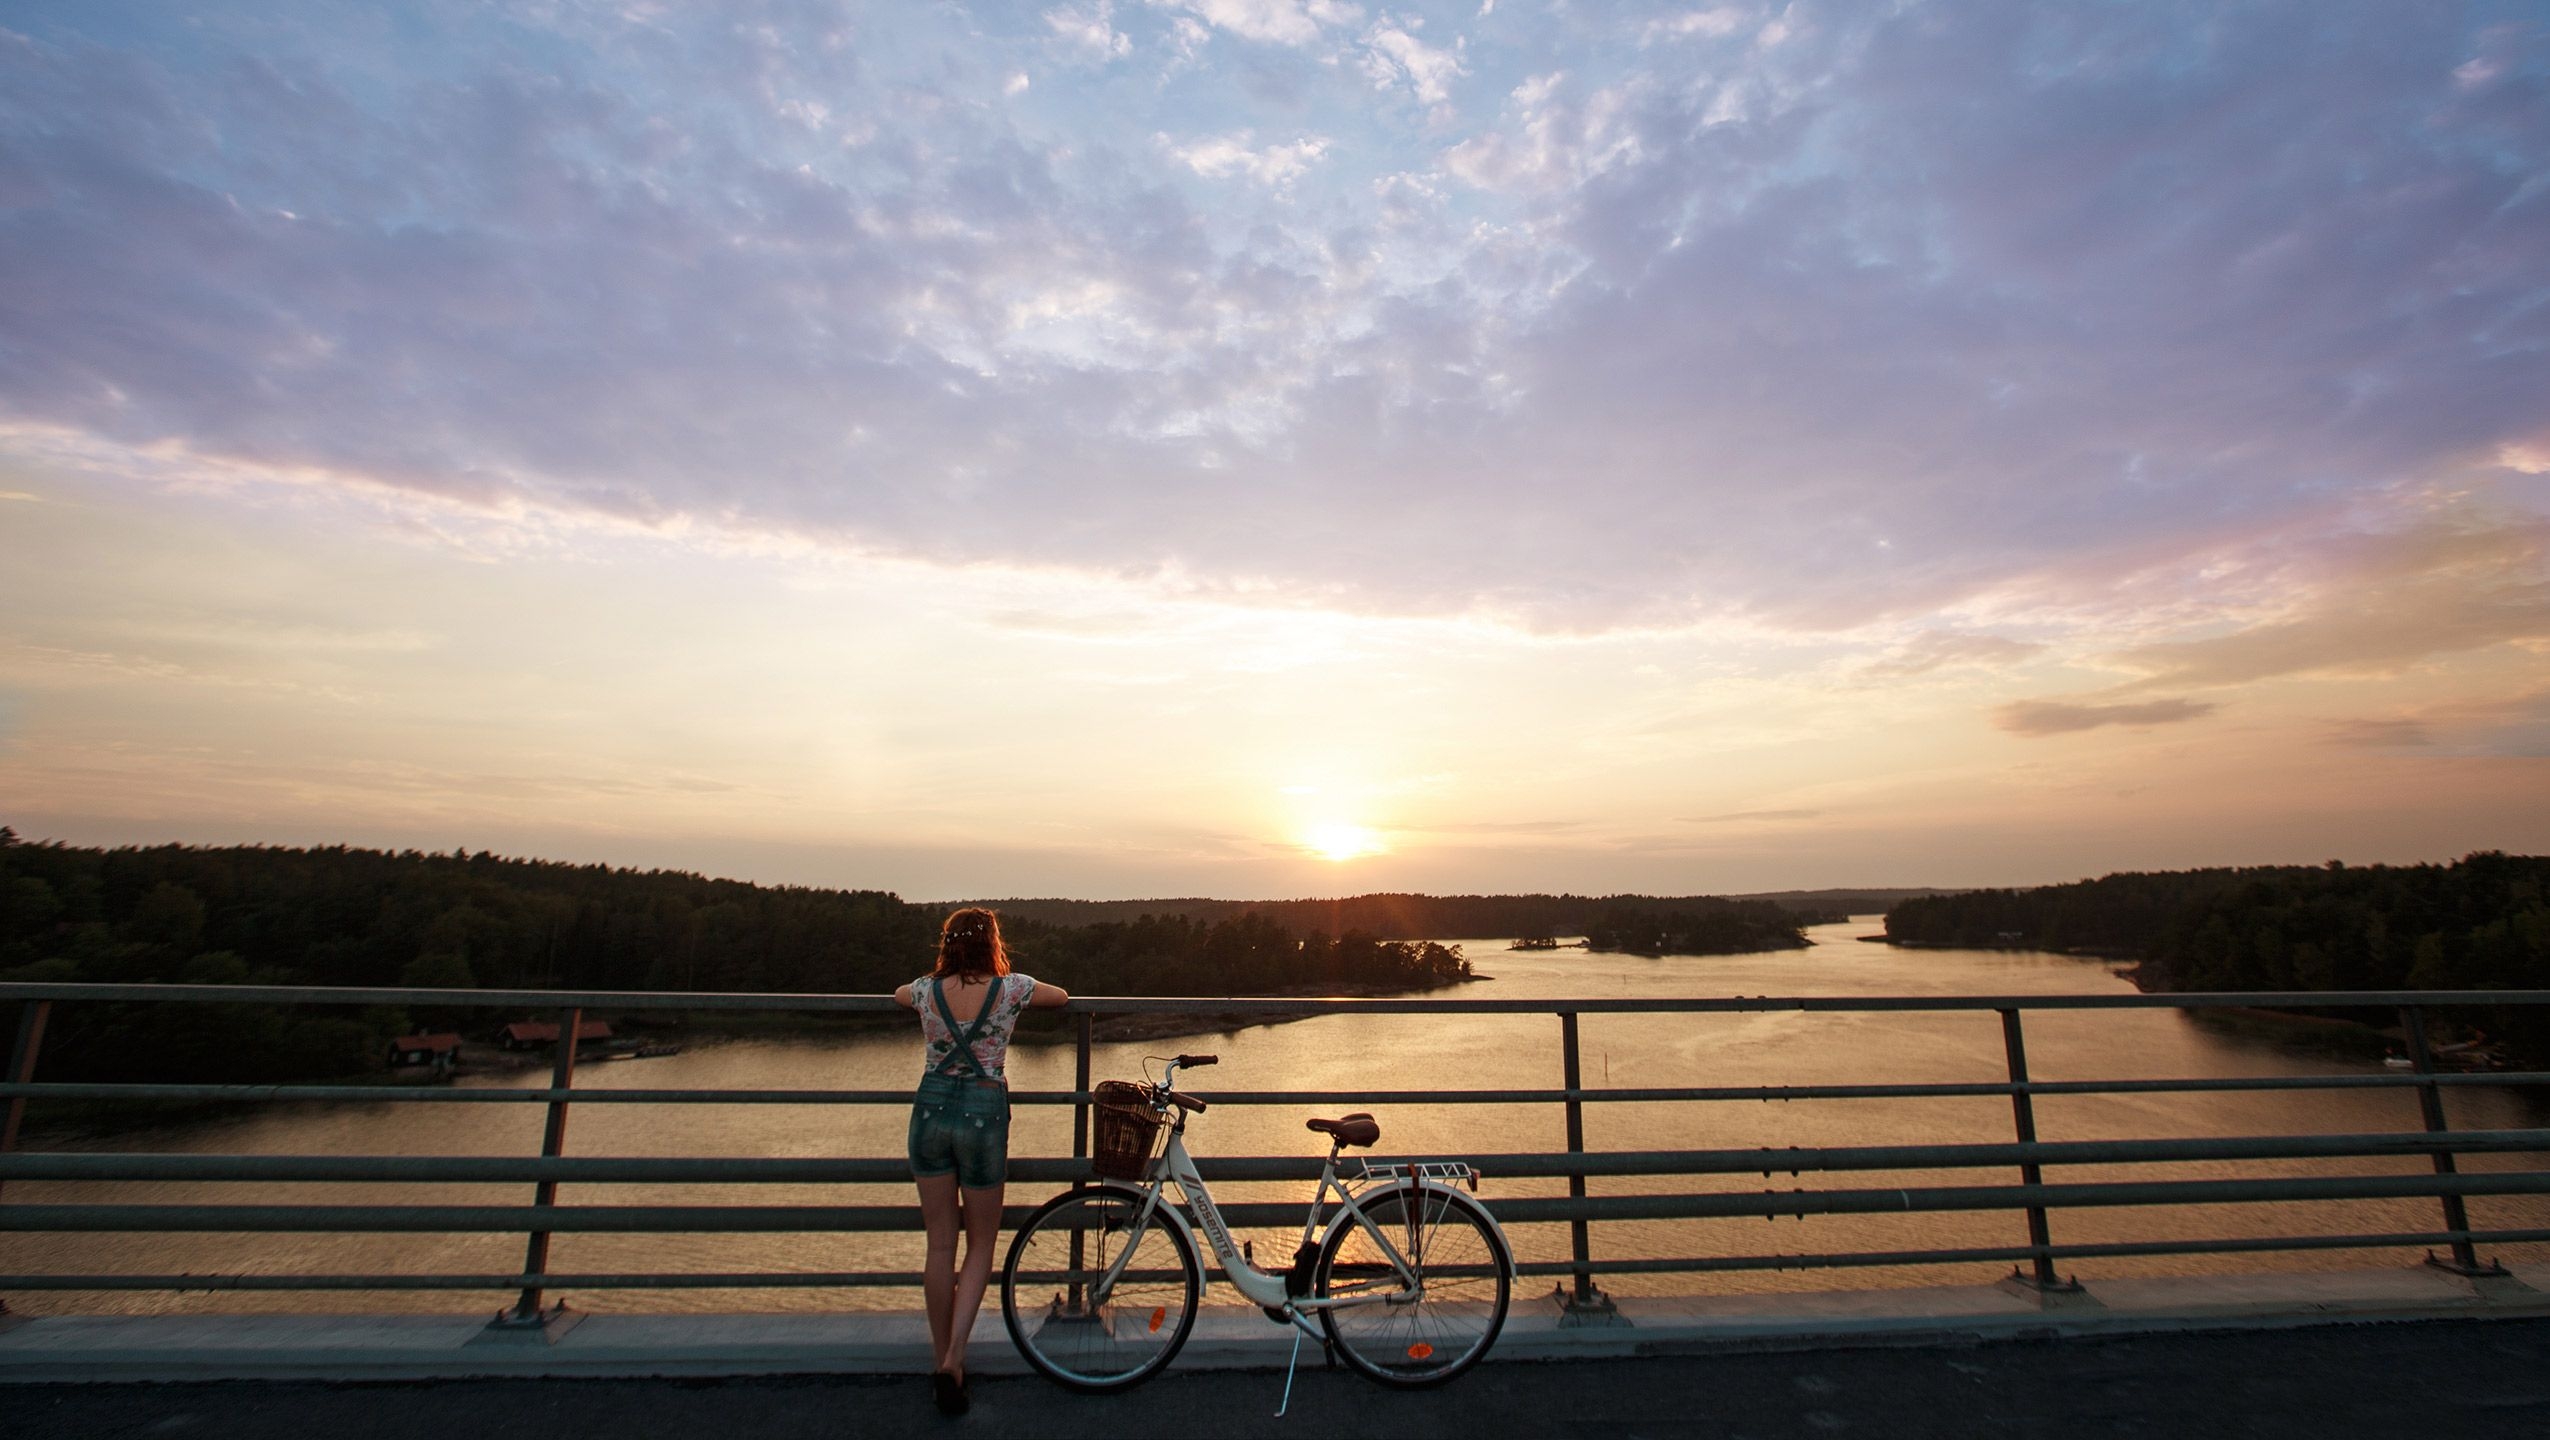 Nainen seisoo sillalla polkupyöränsä vieressä ja nojaa kaiteeseen. Hän katsoo kohti saaristoa ja auringonlaskua, joka on värjännyt meren oranssiksi.